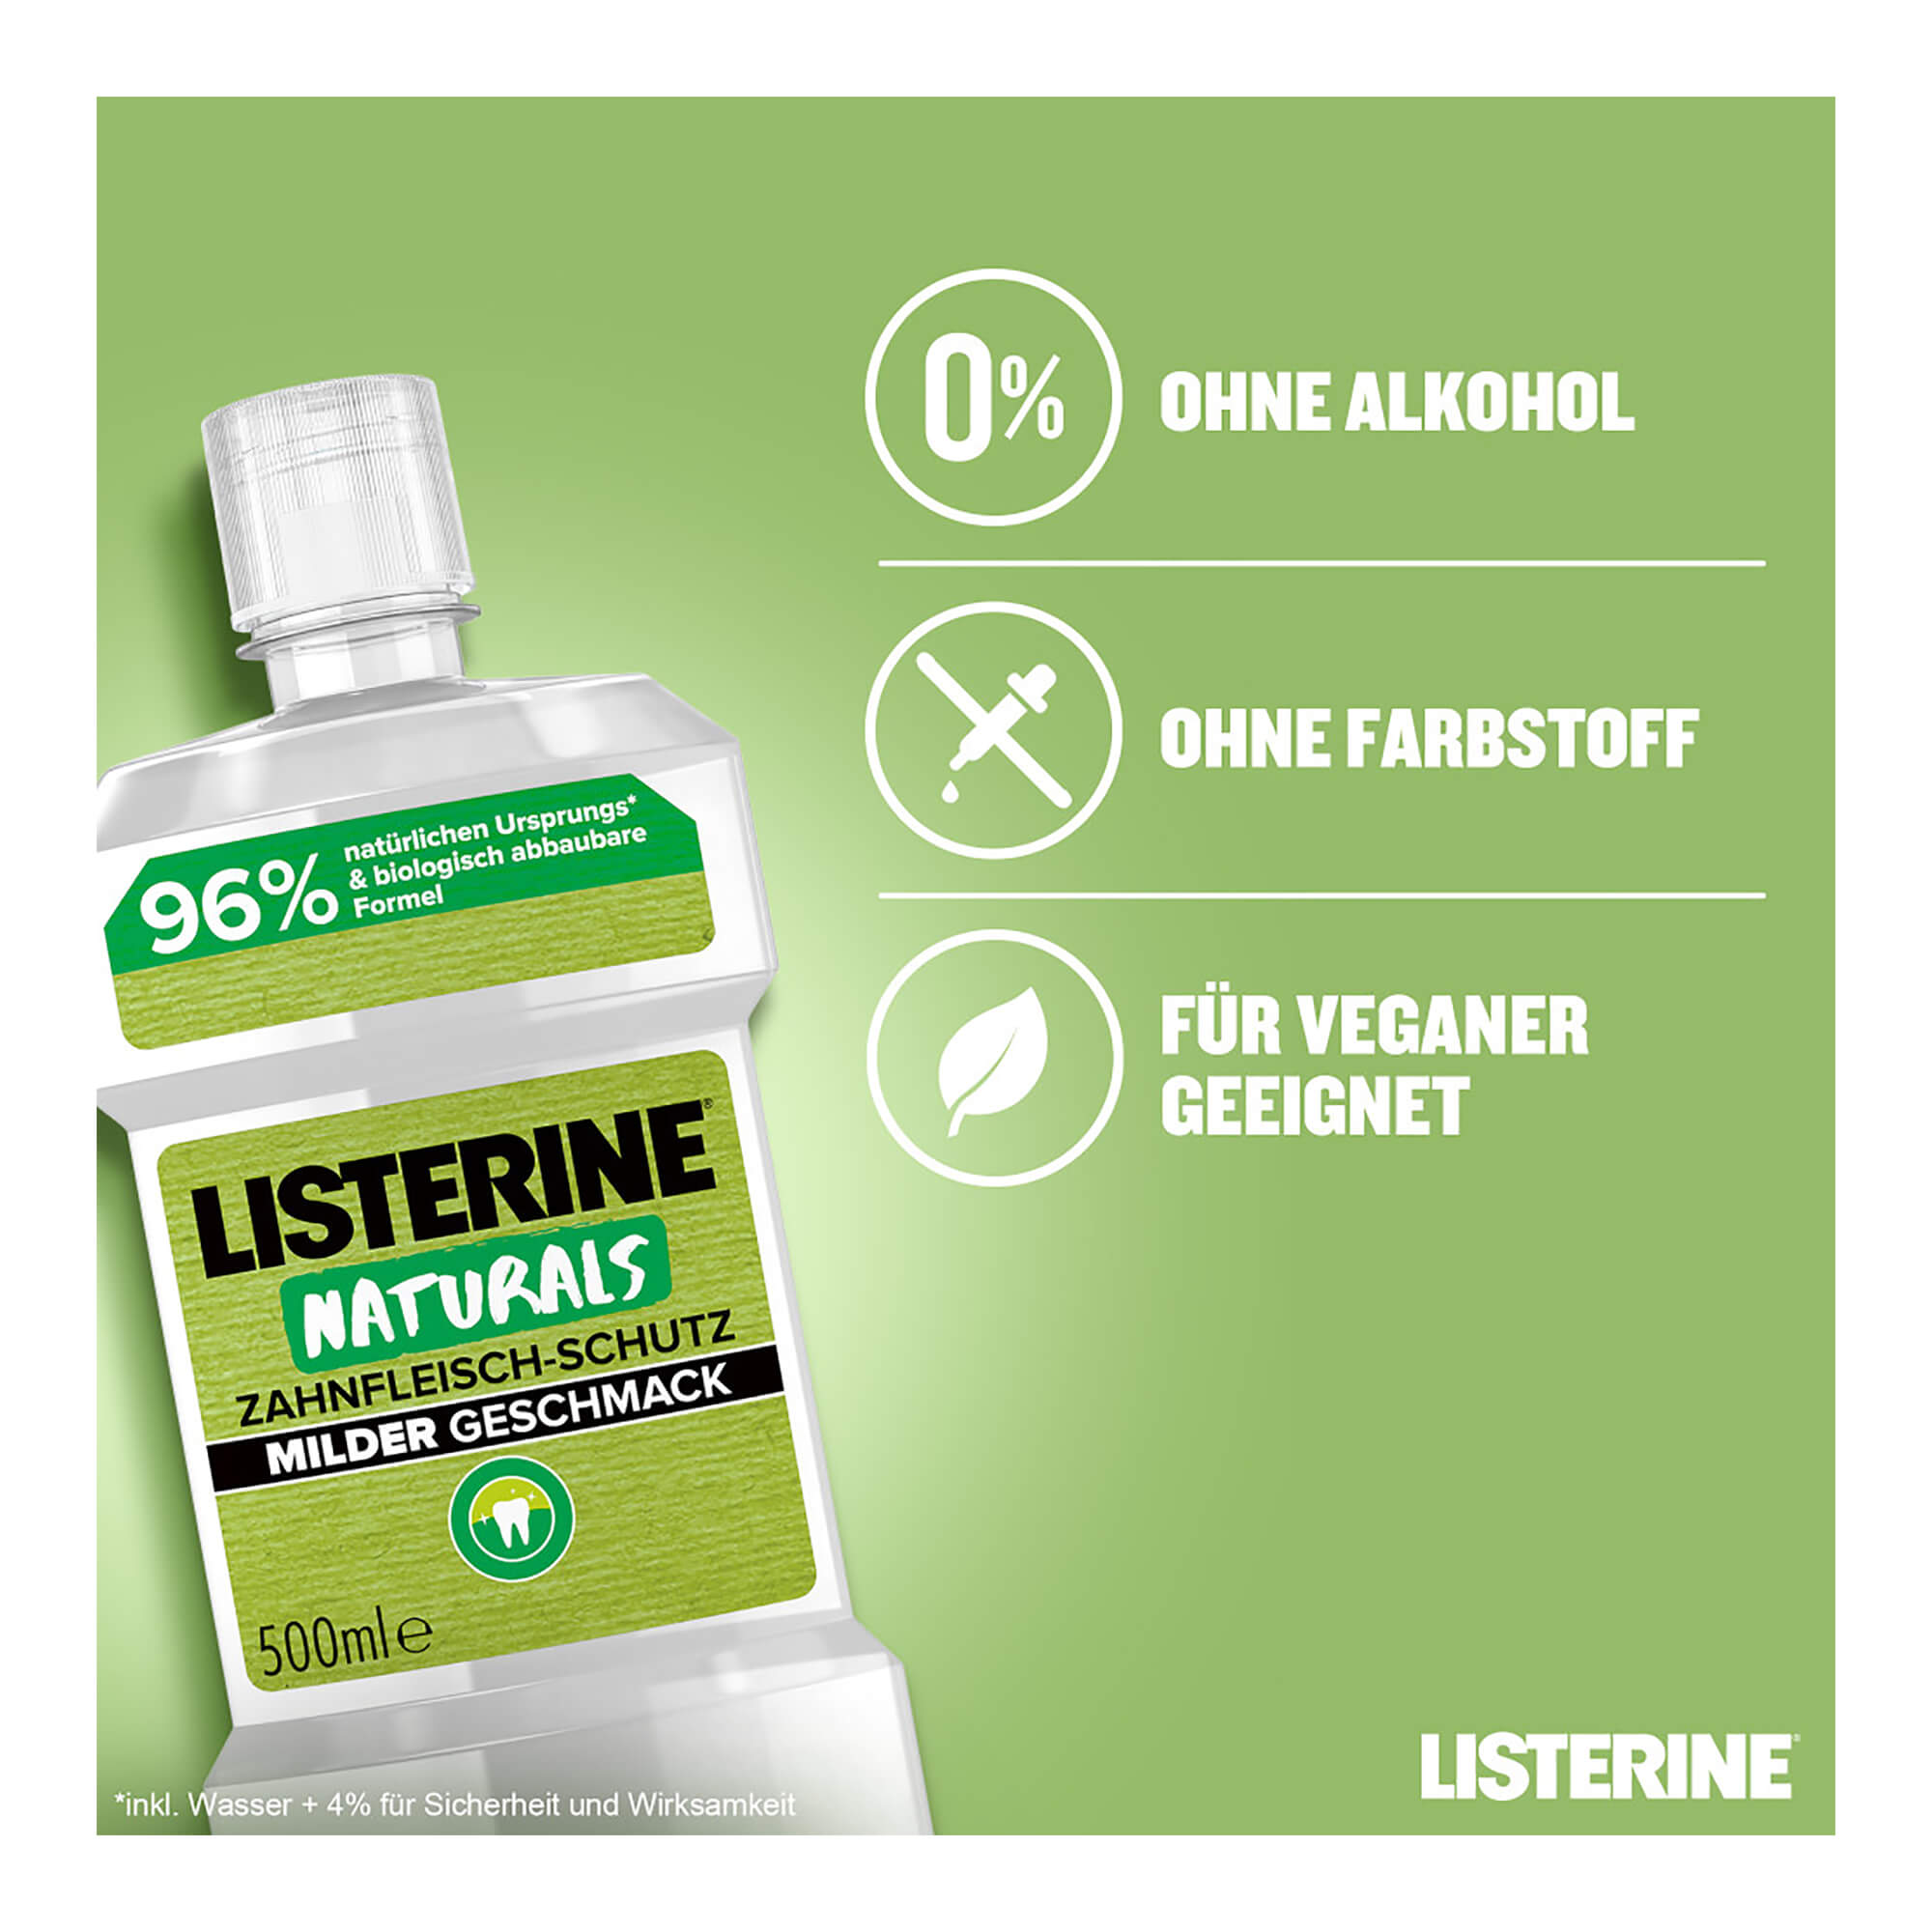 Listerine Naturals Zahnfleisch-Schutz Merkmale